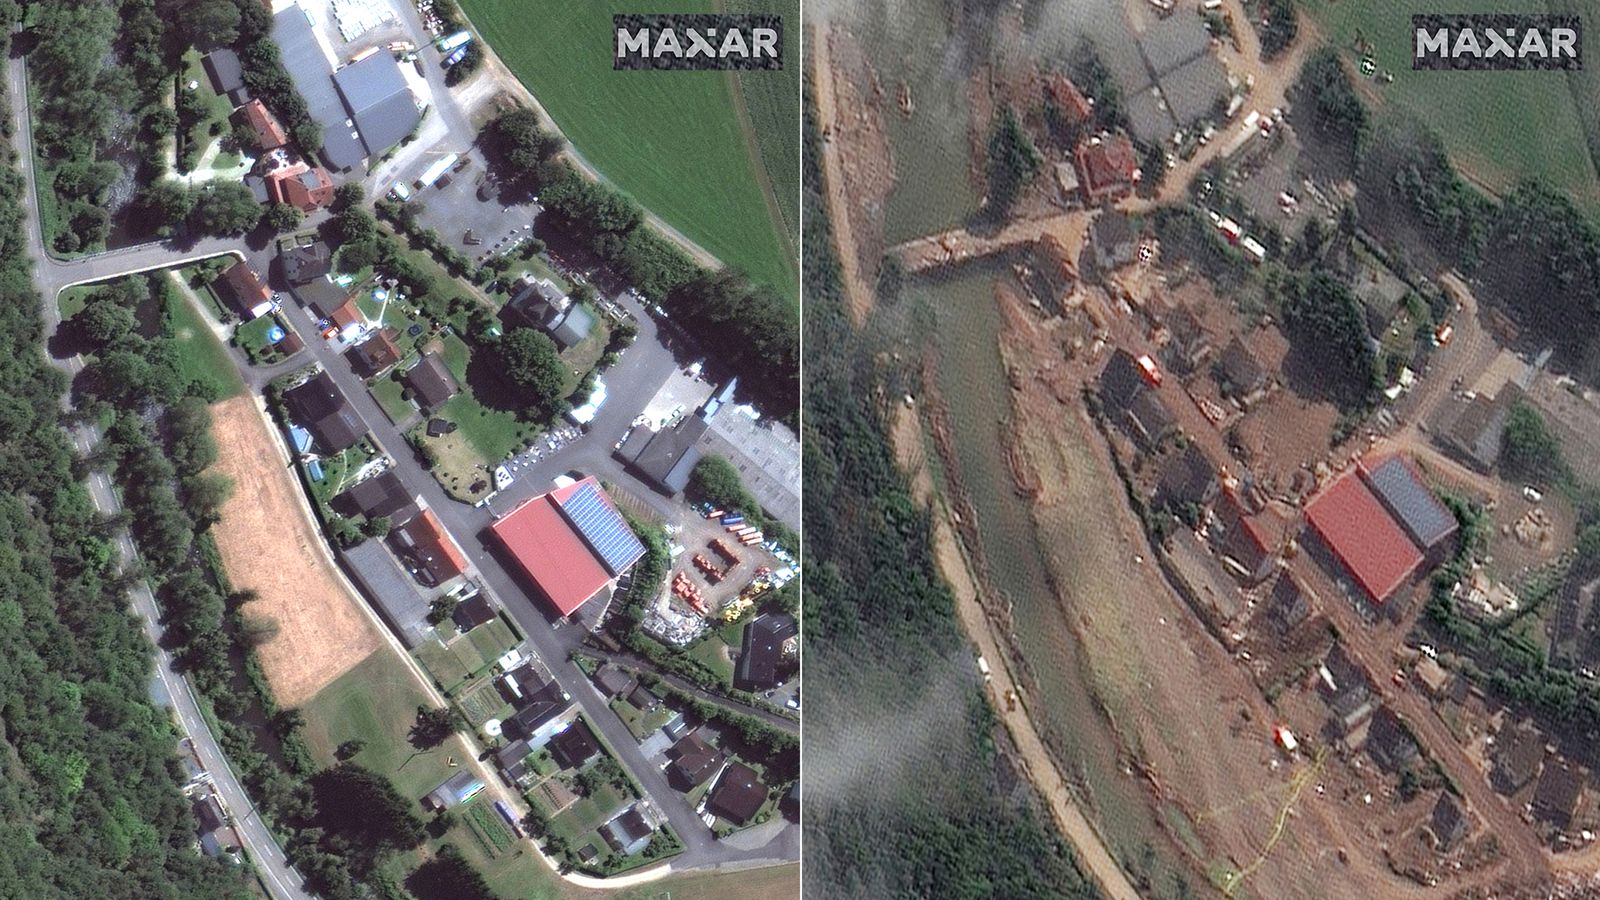 Inondazioni in Germania: le immagini satellitari prima e dopo mostrano la devastazione che ha causato |  notizie dal mondo